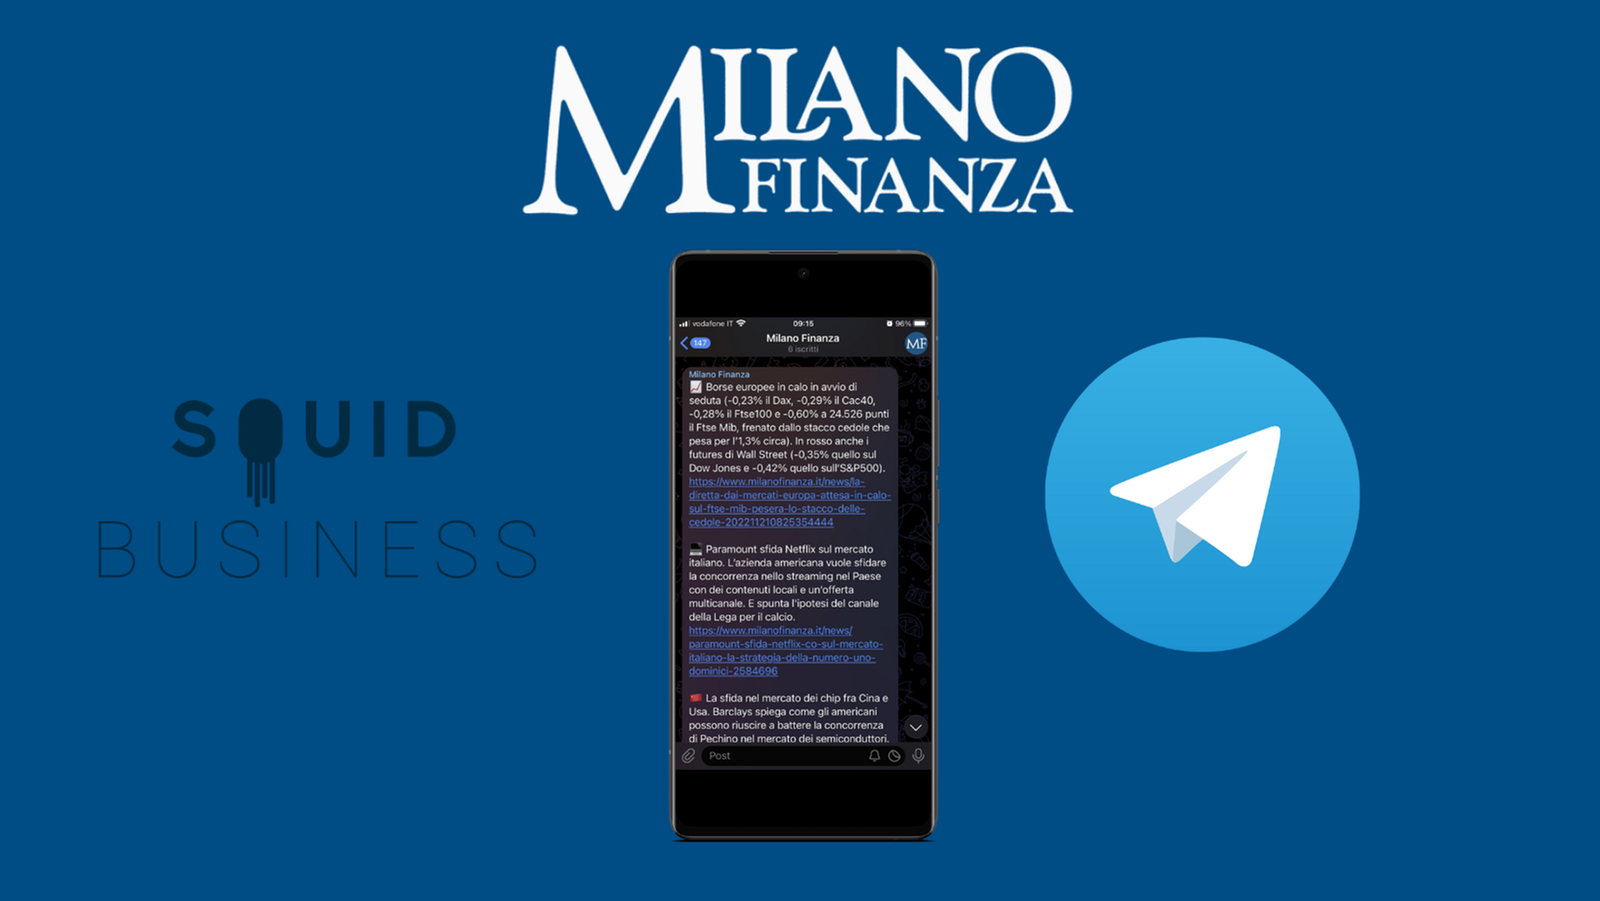 Llegan noticias de MF-Milano Finanza sobre casos de Telegram y Squid